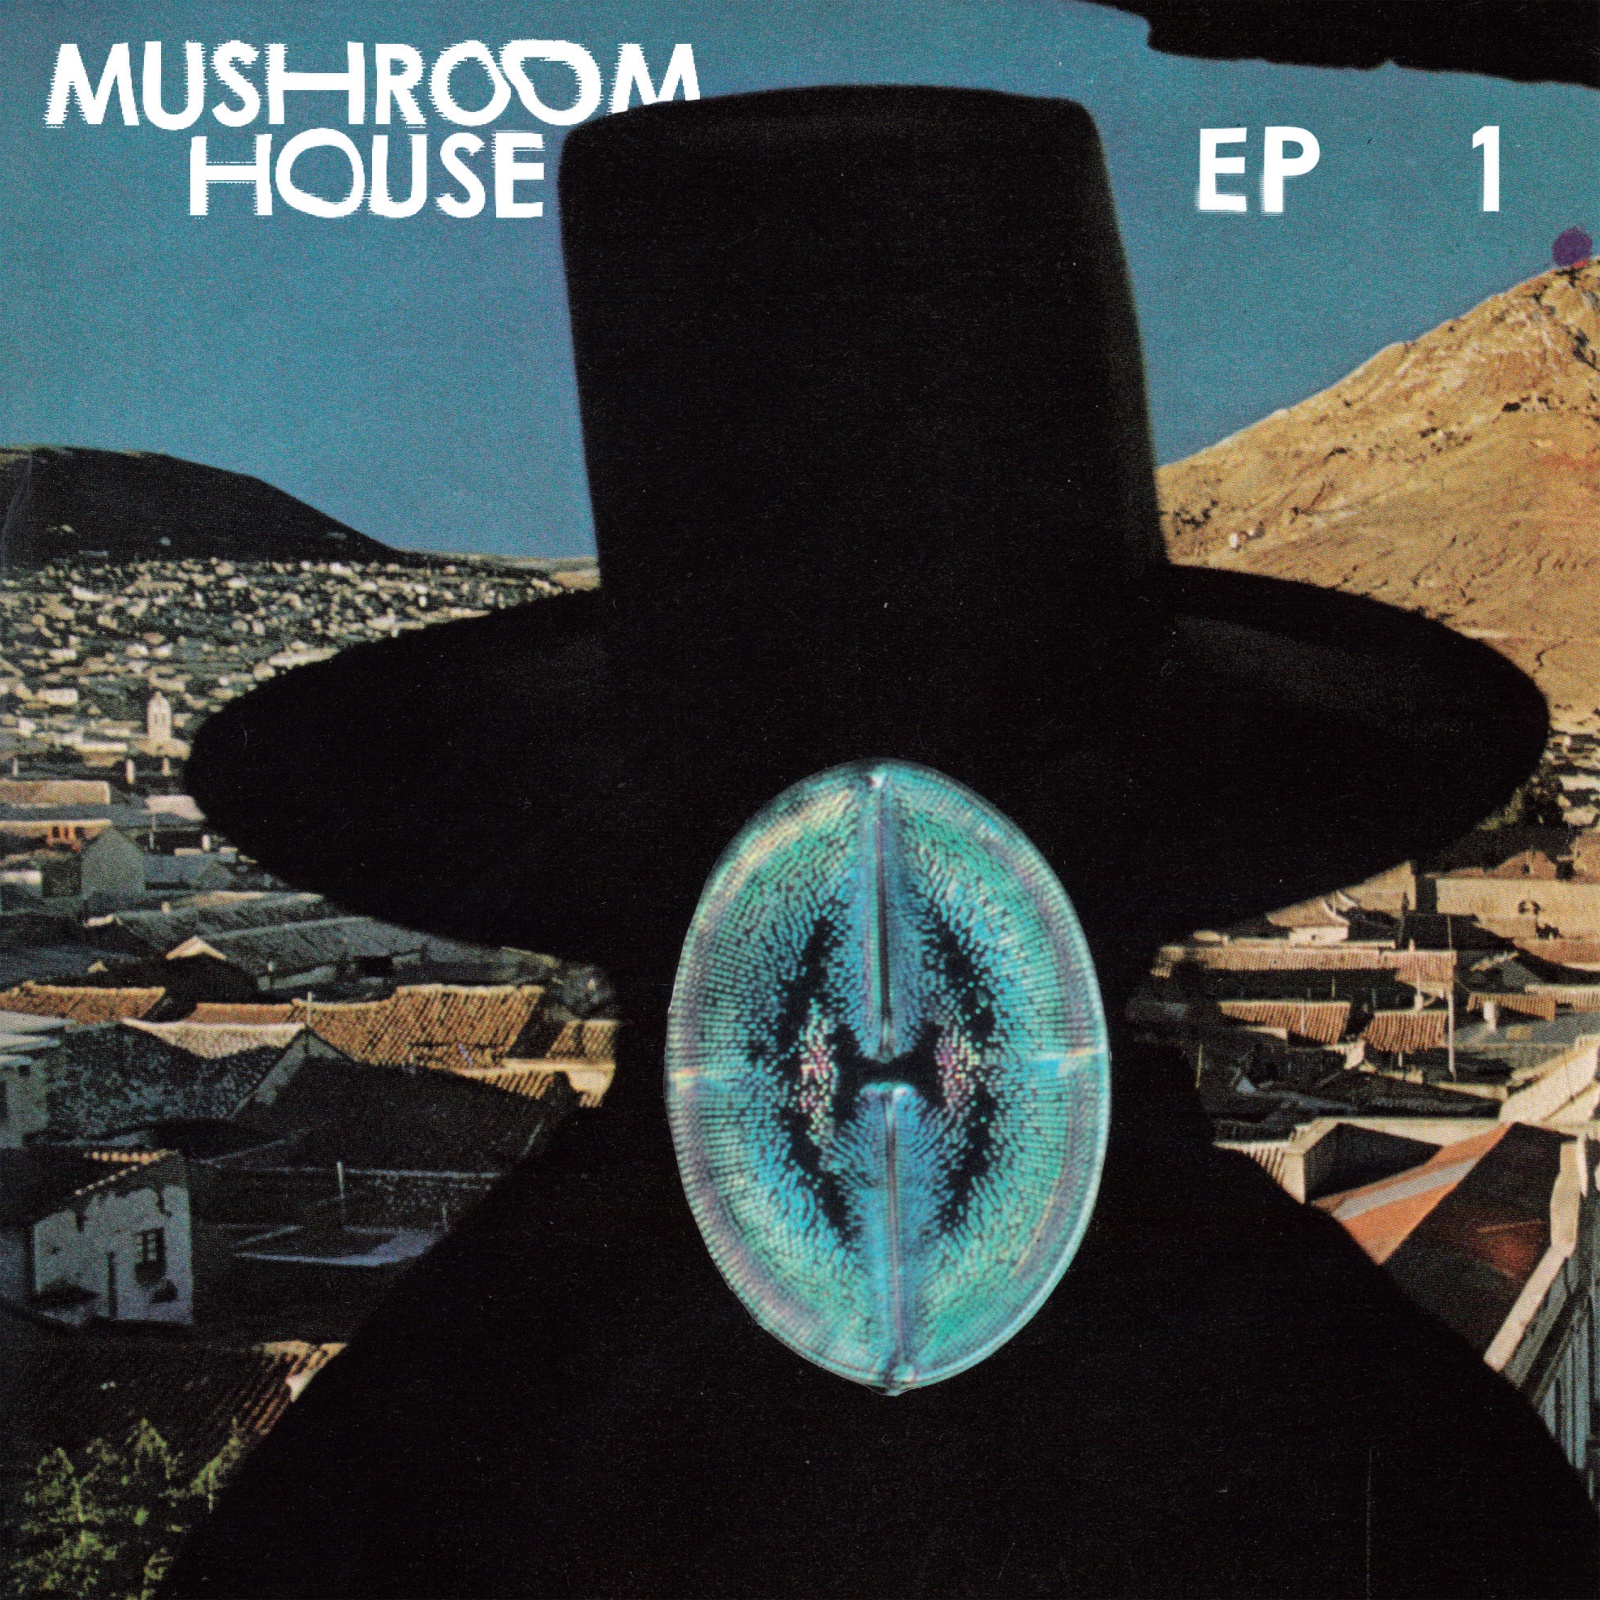 TOYT052: Mushroom House EP1